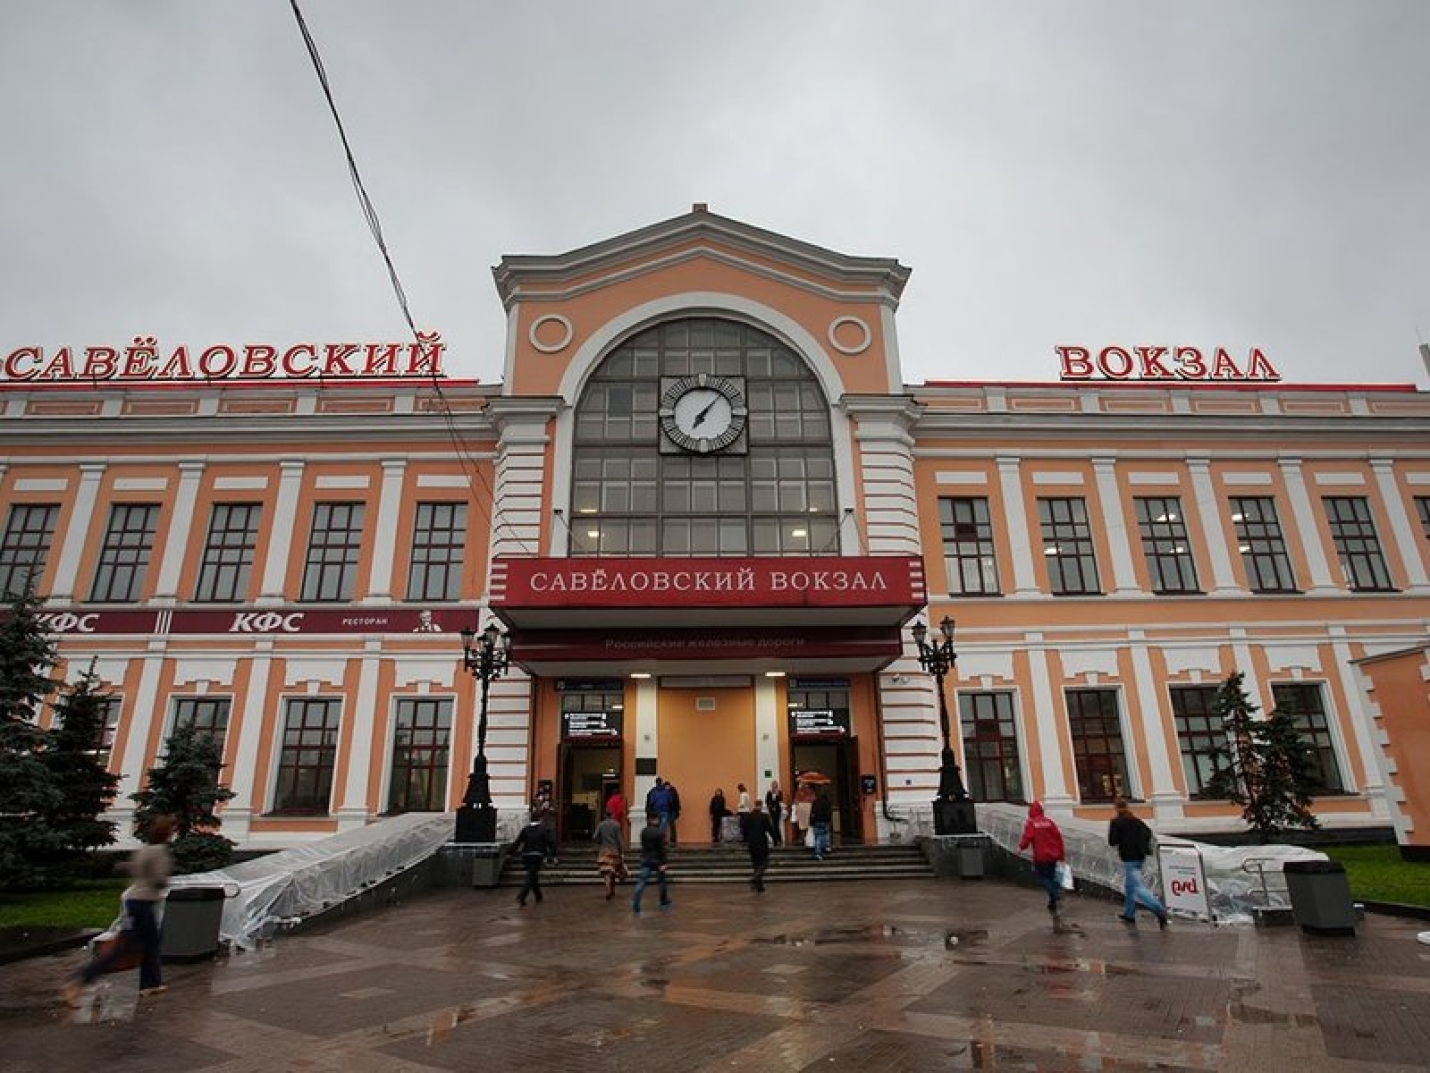 Площадь Савеловского вокзала будет благоустроена к запуску Московских диаметров 